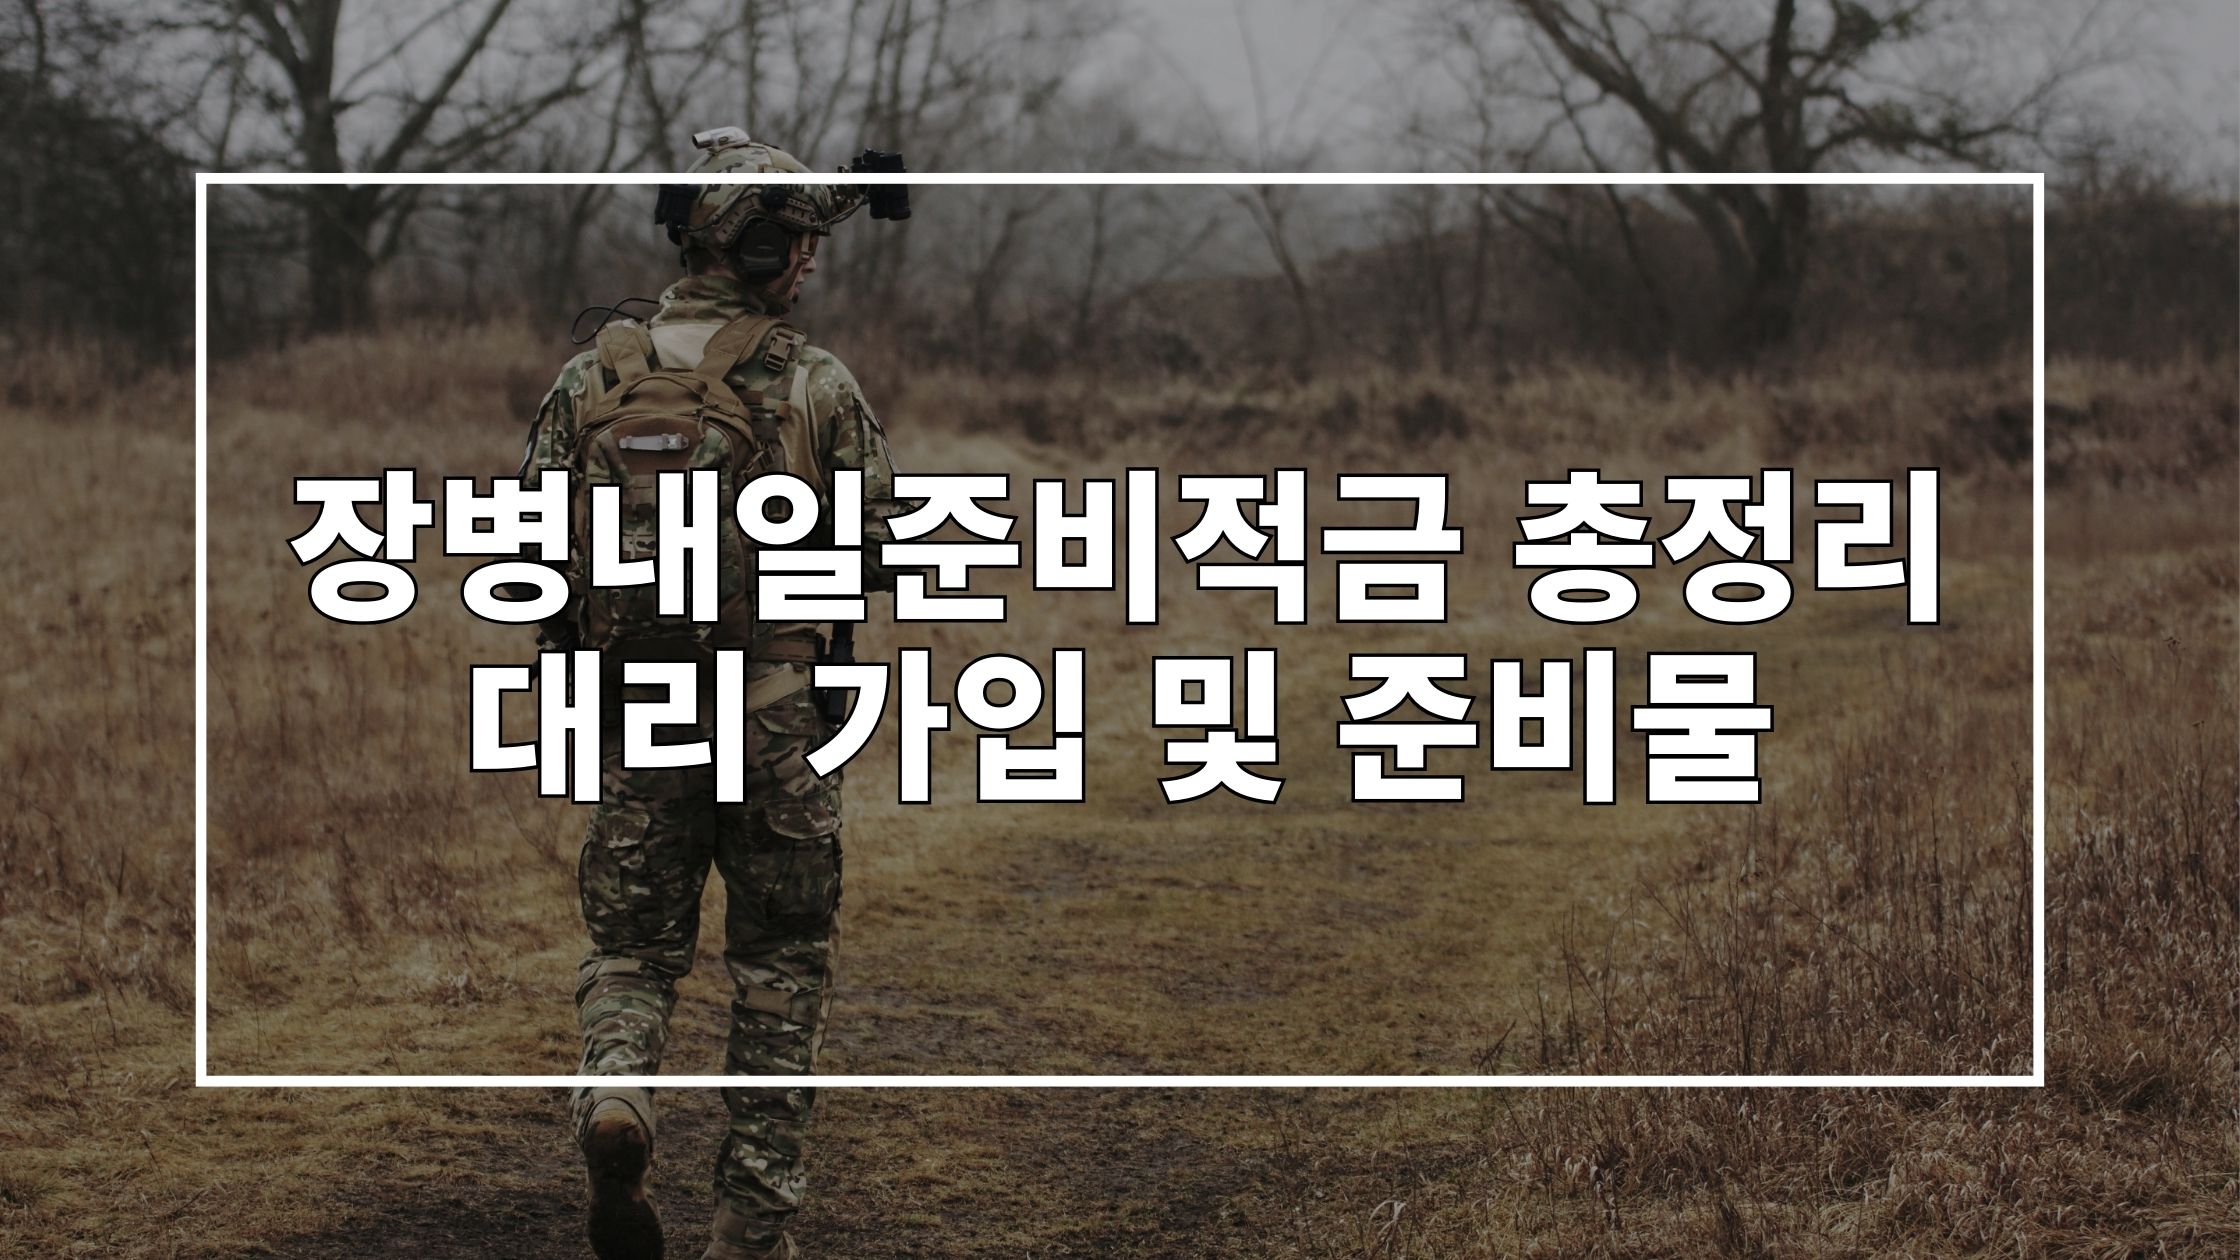 군인의 뒷모습 사진 위에 '장병내일준비적금 총정리 대리 가입 및 준비물'이라고 쓰여있는 썸네일 이미지입니다.